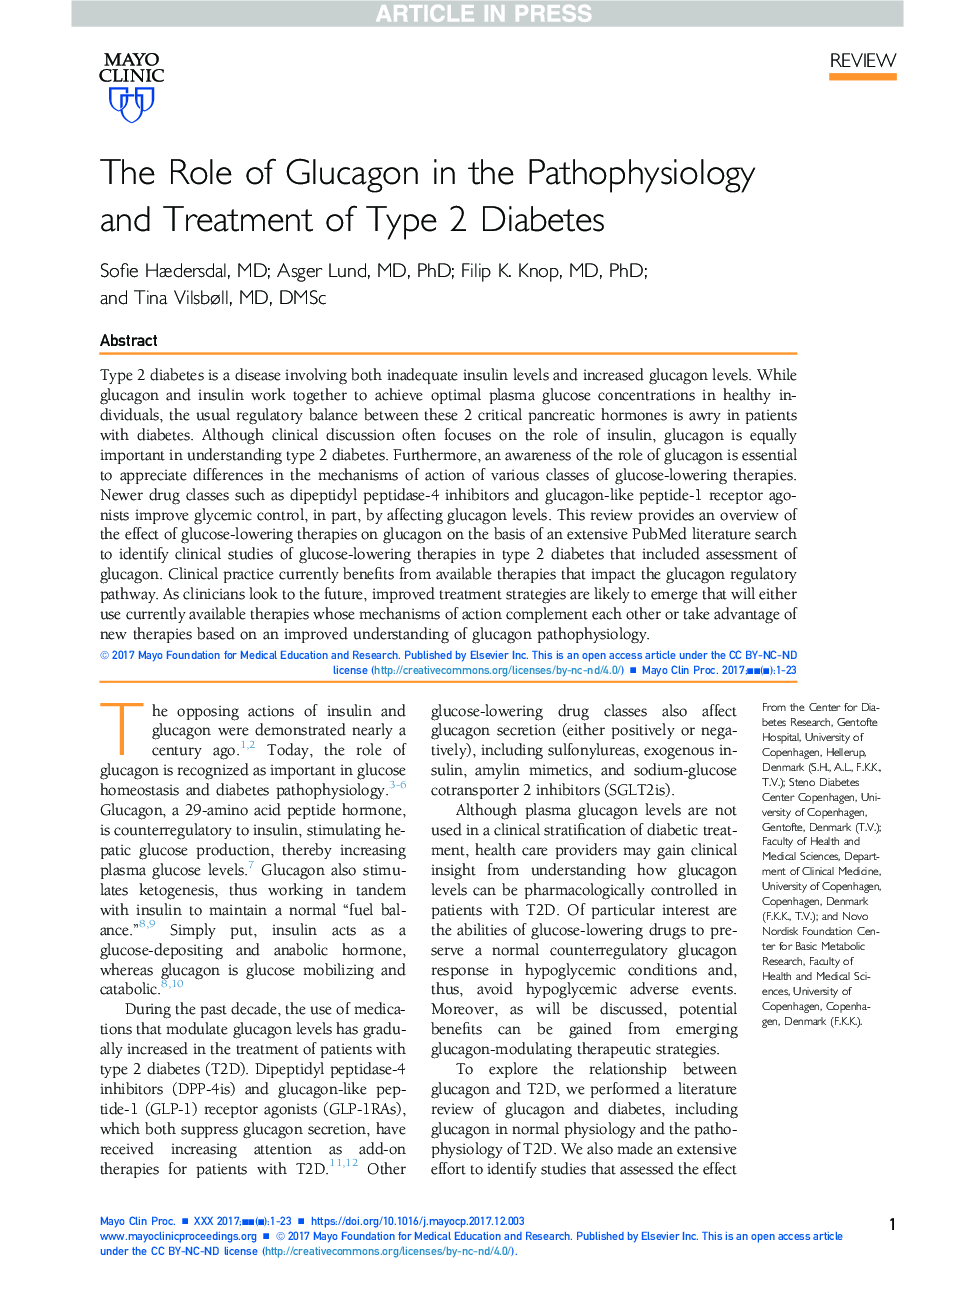 نقش گلوکاگون در پاتوفیزیولوژی و درمان دیابت نوع 2 